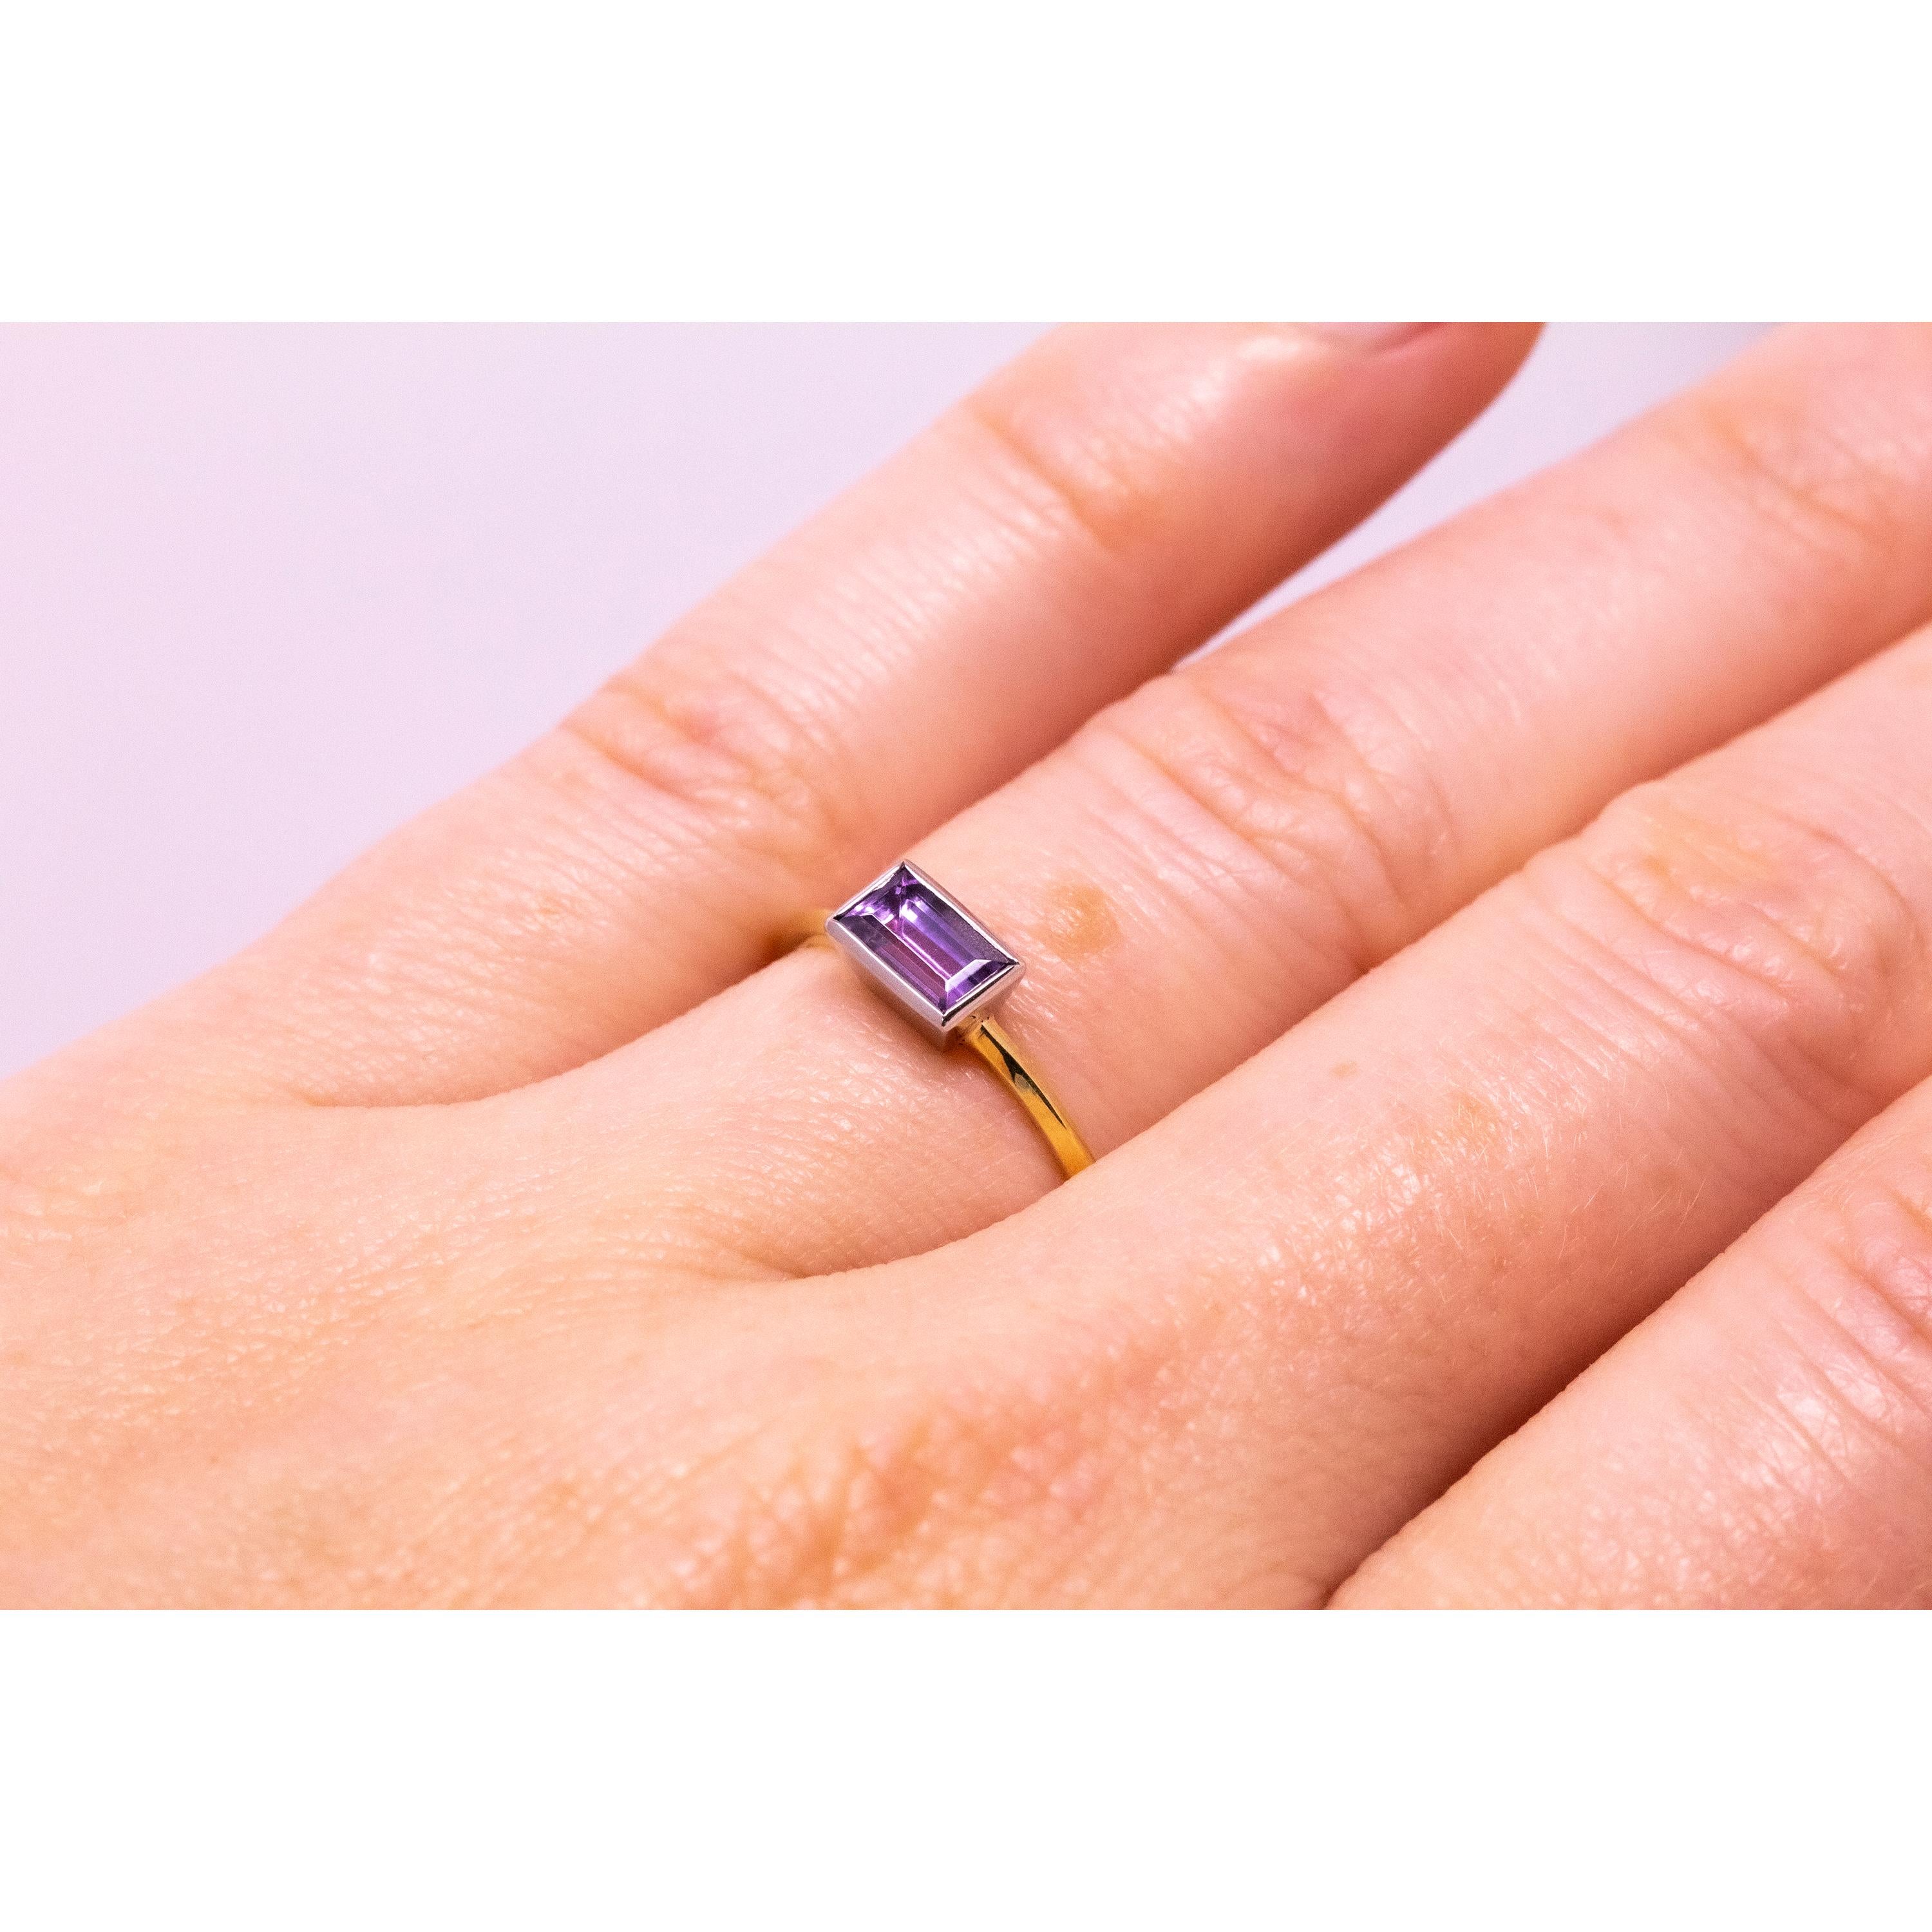 Der auffällige und seltene, unerhitzte Tansanit in der Farbe Rosa-Lavendel funkelt perfekt in diesem frischen und modernen Ring. Der auffällige und unerwartete Farbton wird durch einen geradlinigen Smaragdschliff hervorgehoben. Diese seltene Farbe